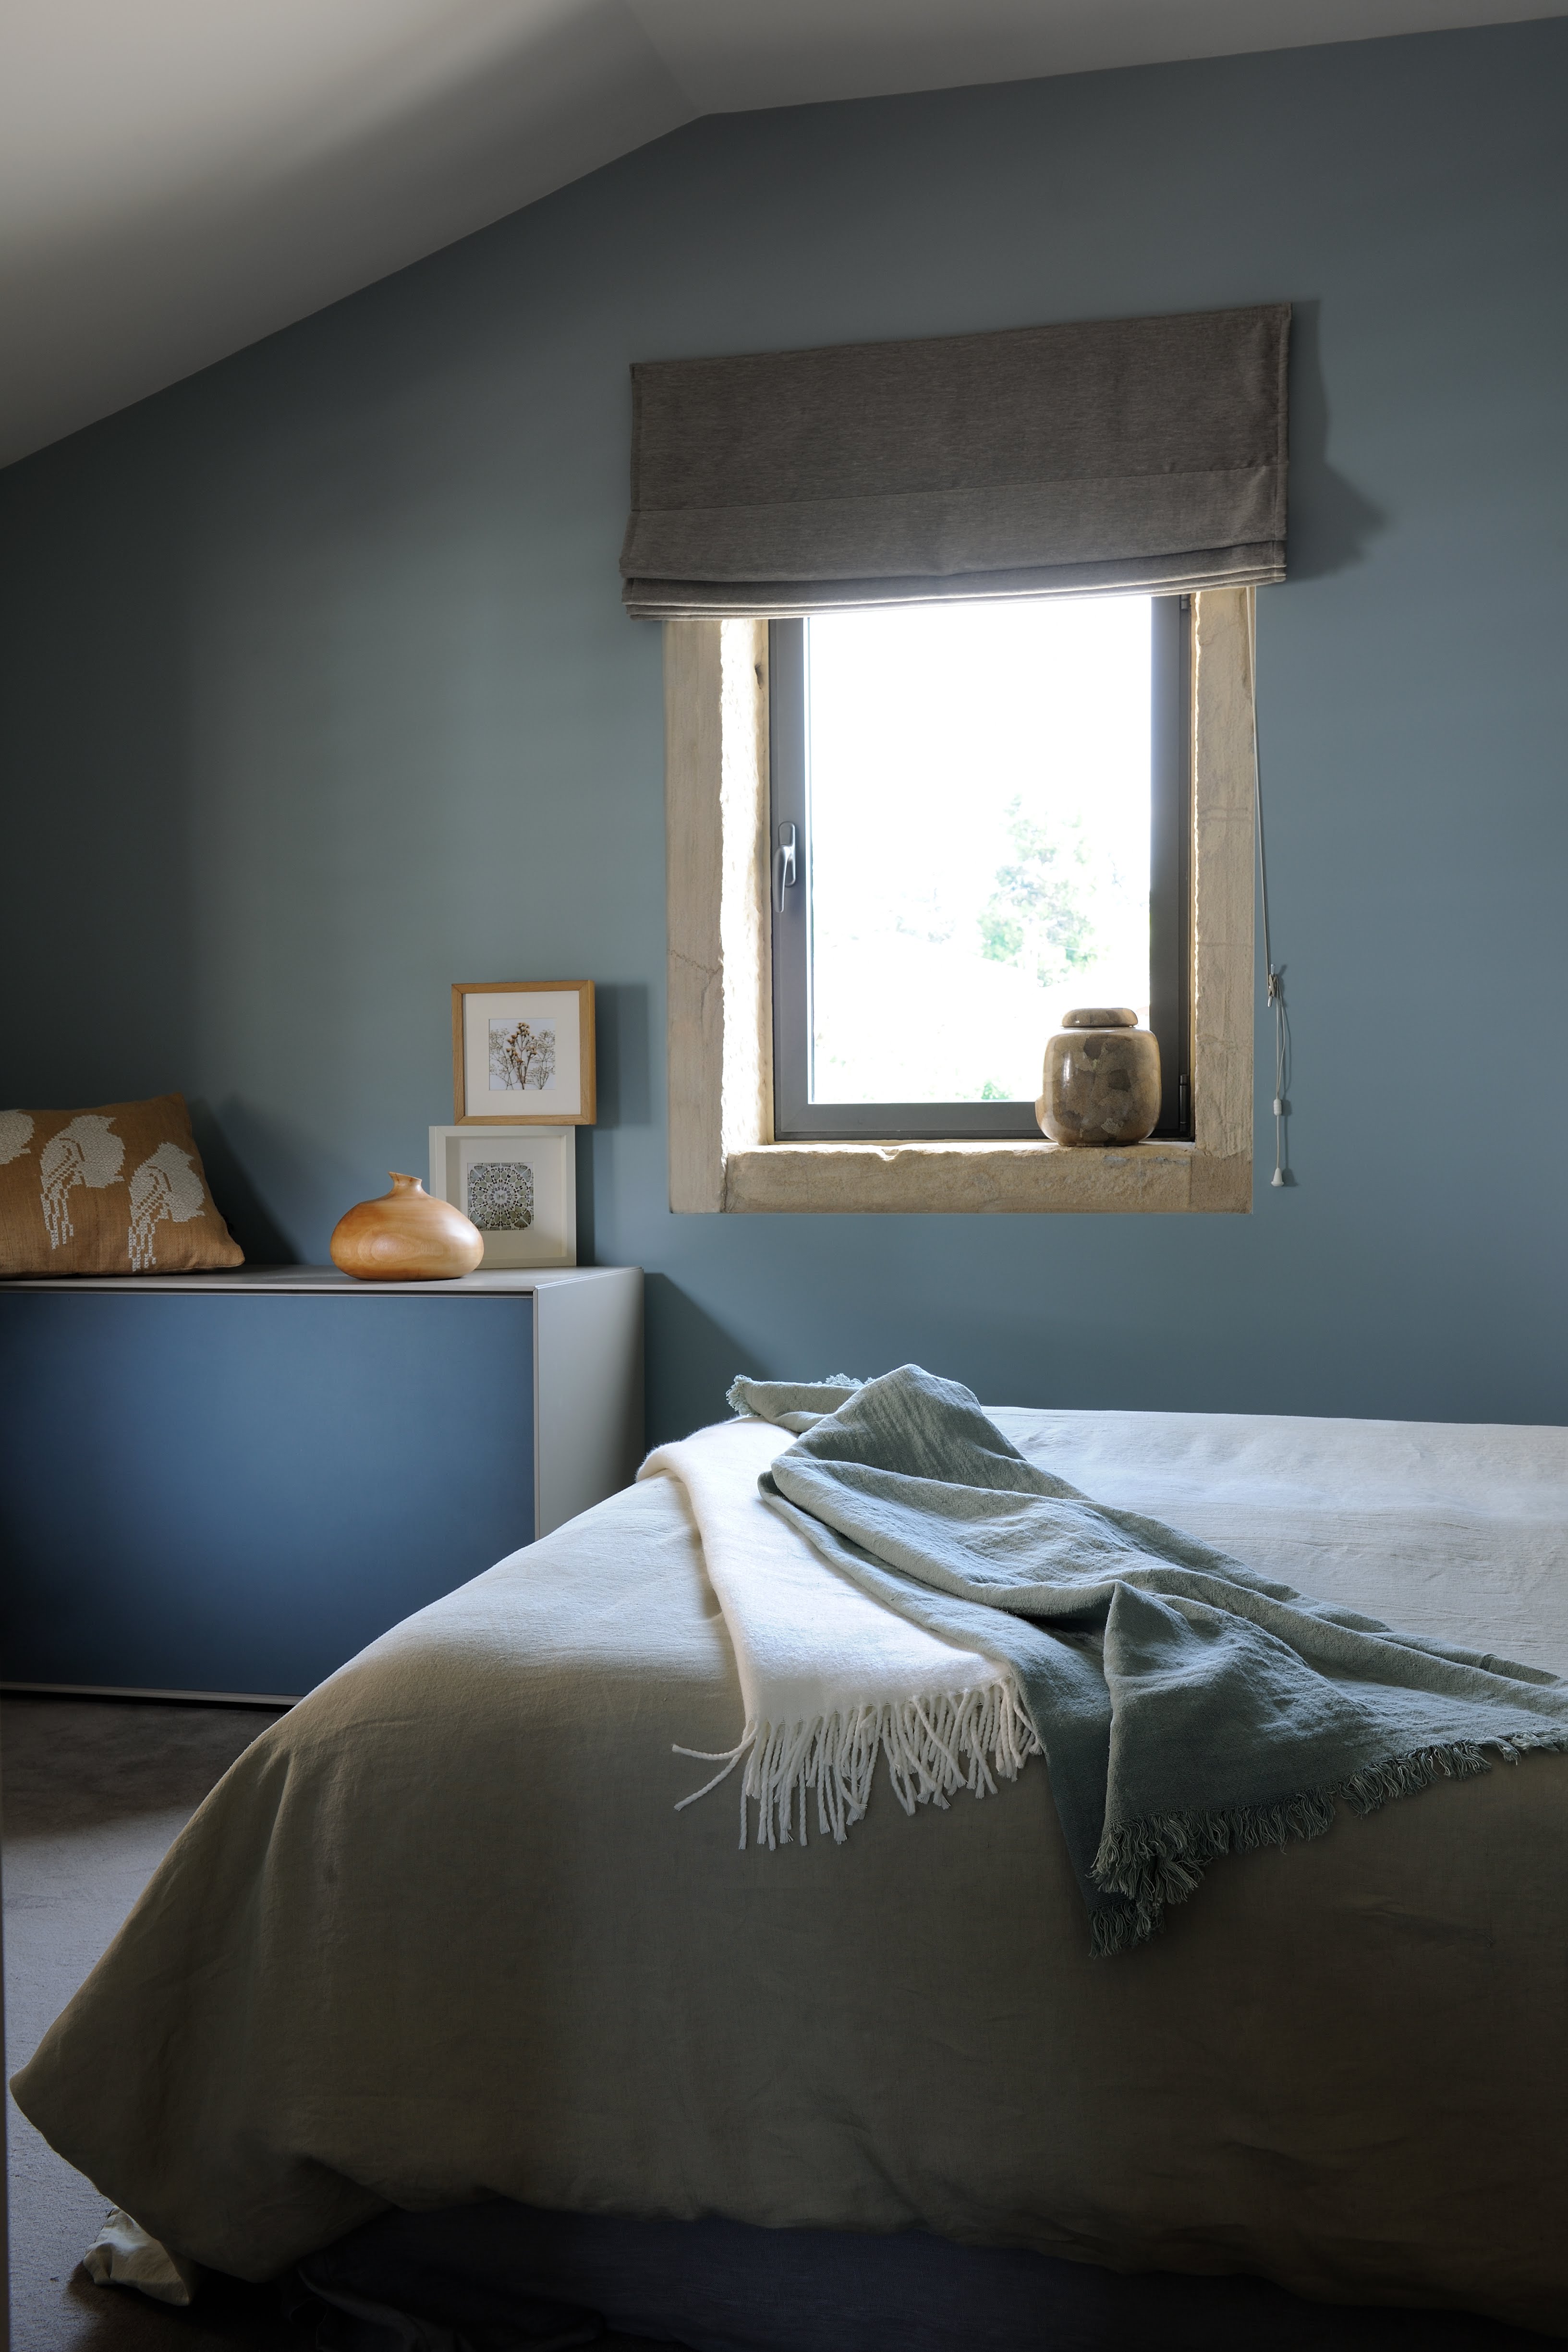 Chambre adulte réalisée avec une peinture intérieure murale dans les tons de bleus, gris et beiges